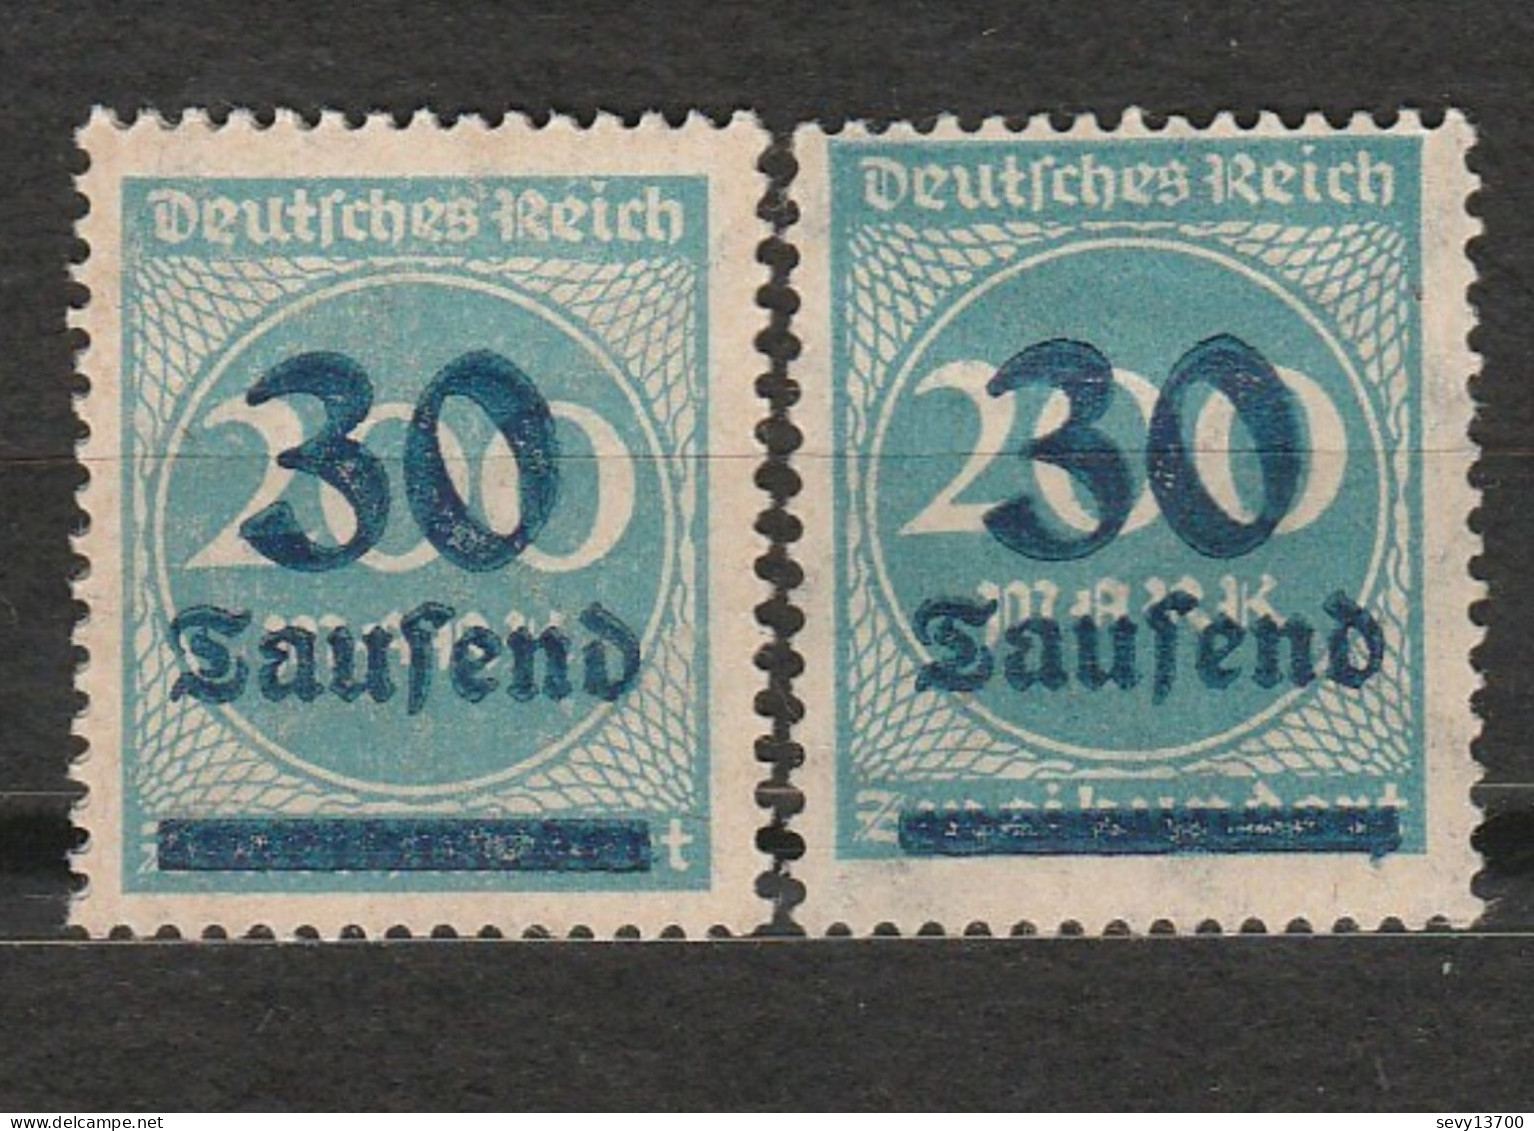 Allemagne - Deutsches Reich - Chiffre - Inflation - 30 Tausend -  2 Neufs Dont 1 Trace De Charnière - Année 1923 Mi 285 - Nuevos